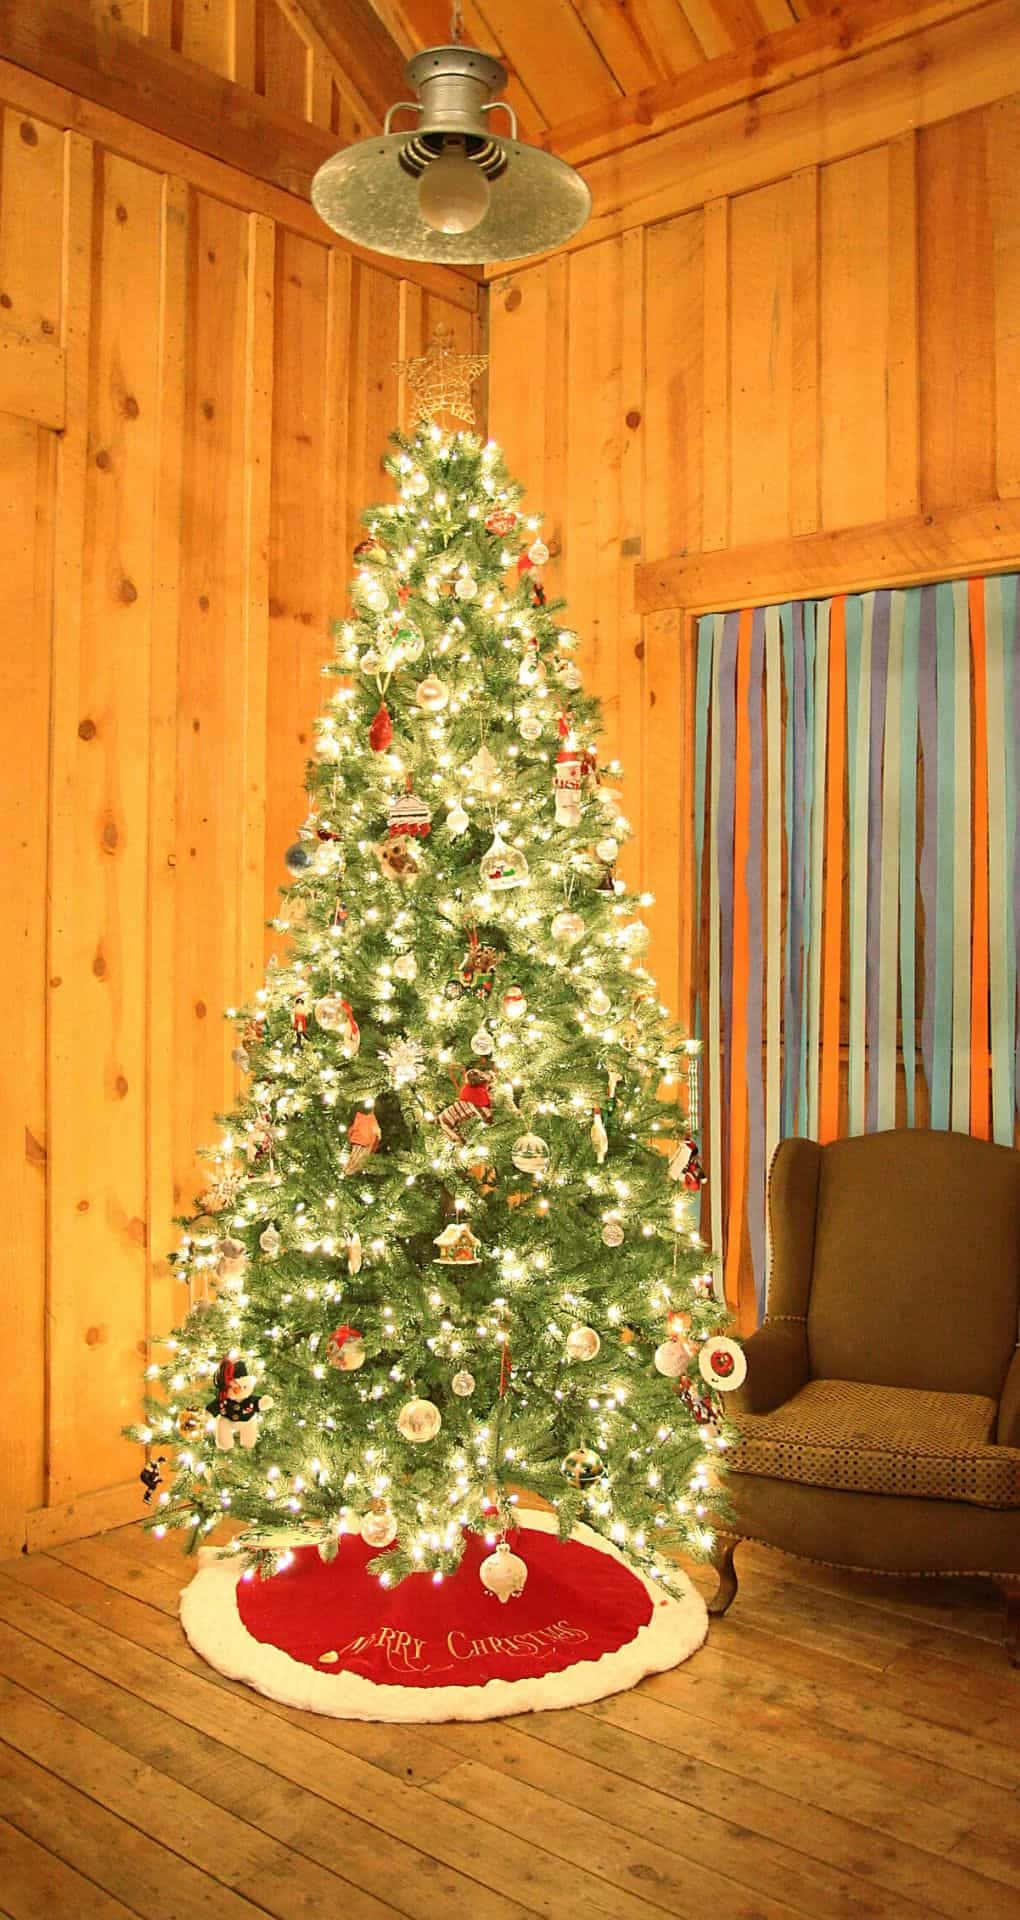 Untranquilo Árbol De Navidad Adorna Una Habitación, Creando Un Ambiente Acogedor Y Pacífico. Fondo de pantalla